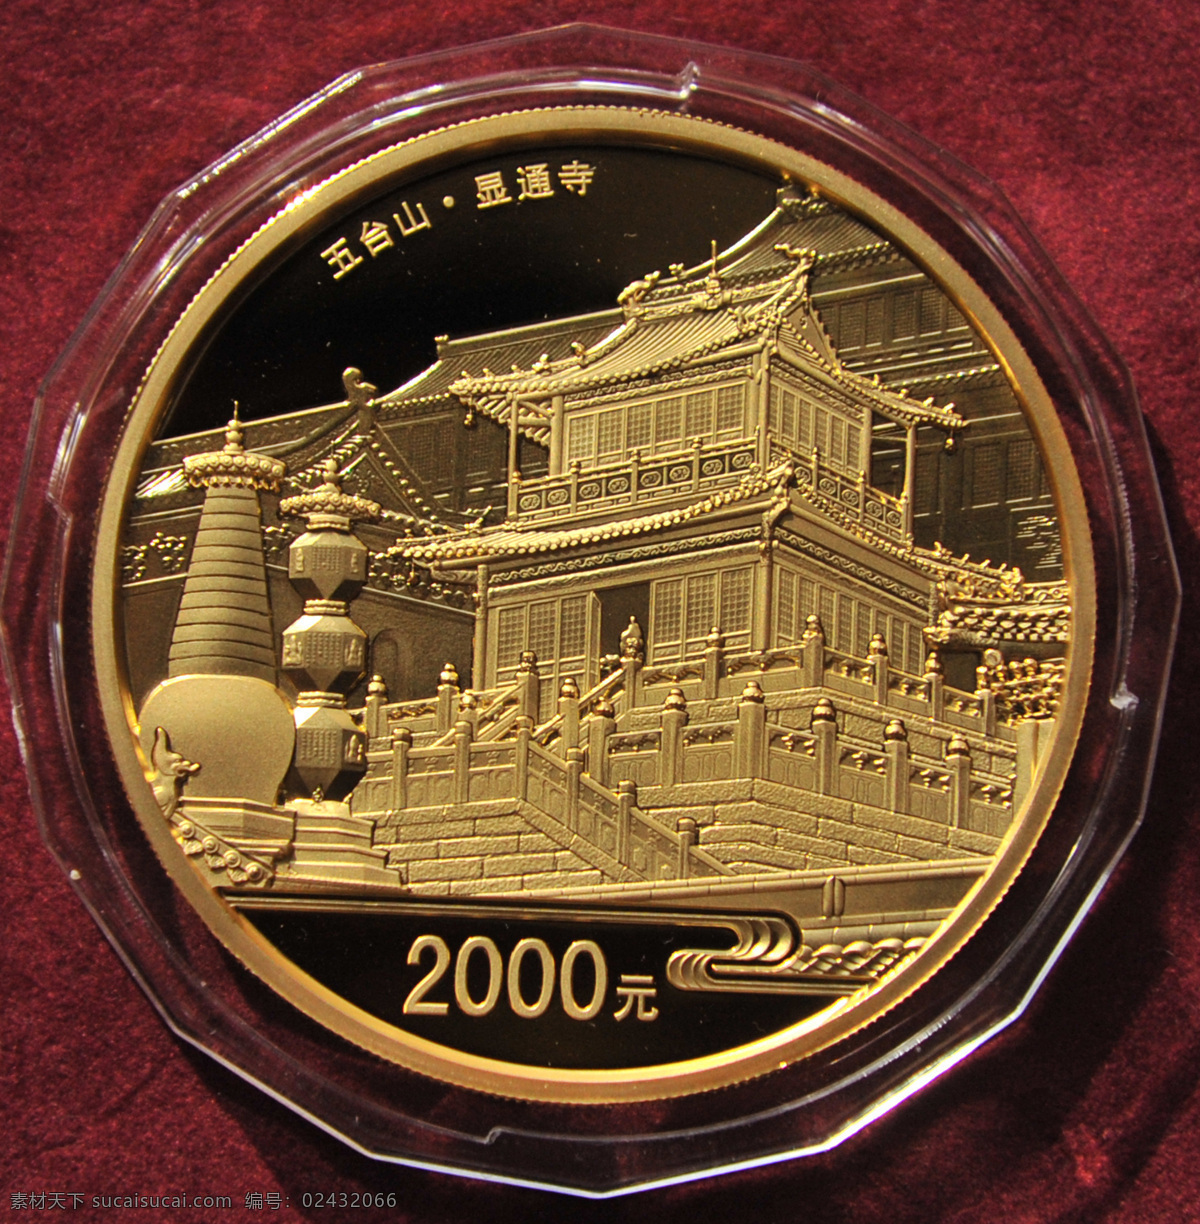 显通寺纪念币 钱币 纪念章 佛教名山 名山 文化艺术 传统文化